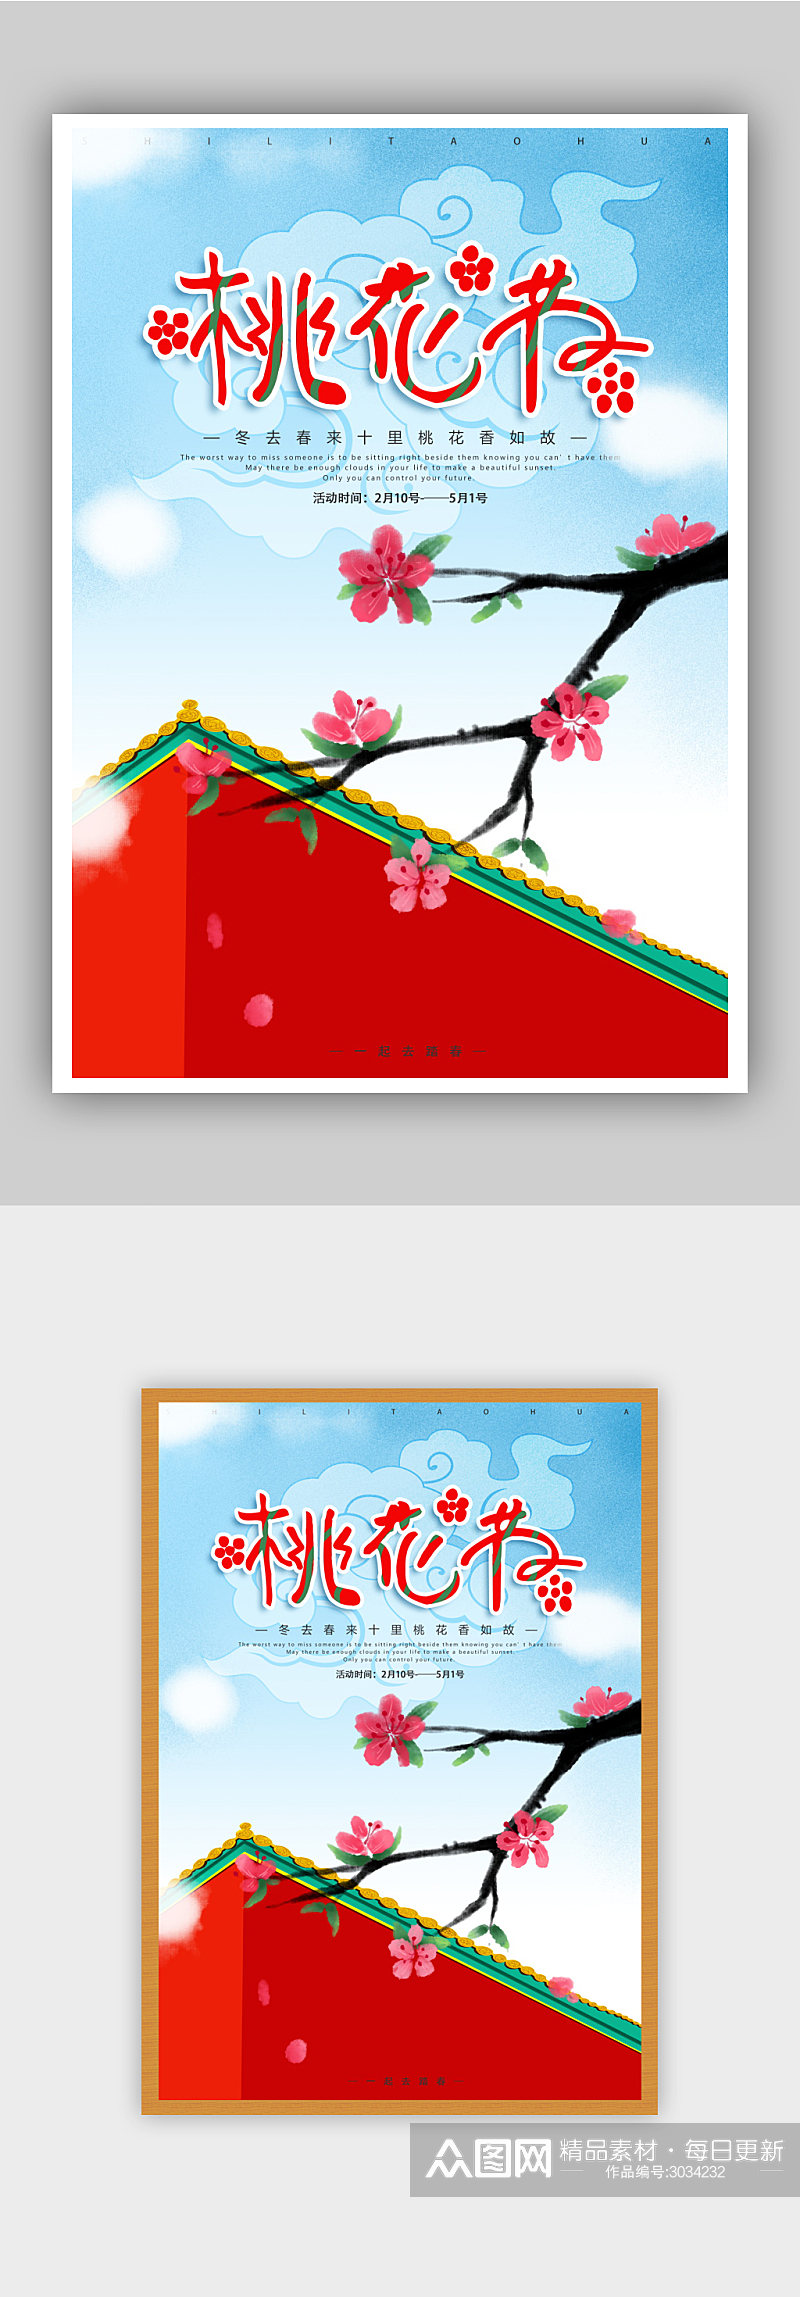 桃花艺术节海报模板素材